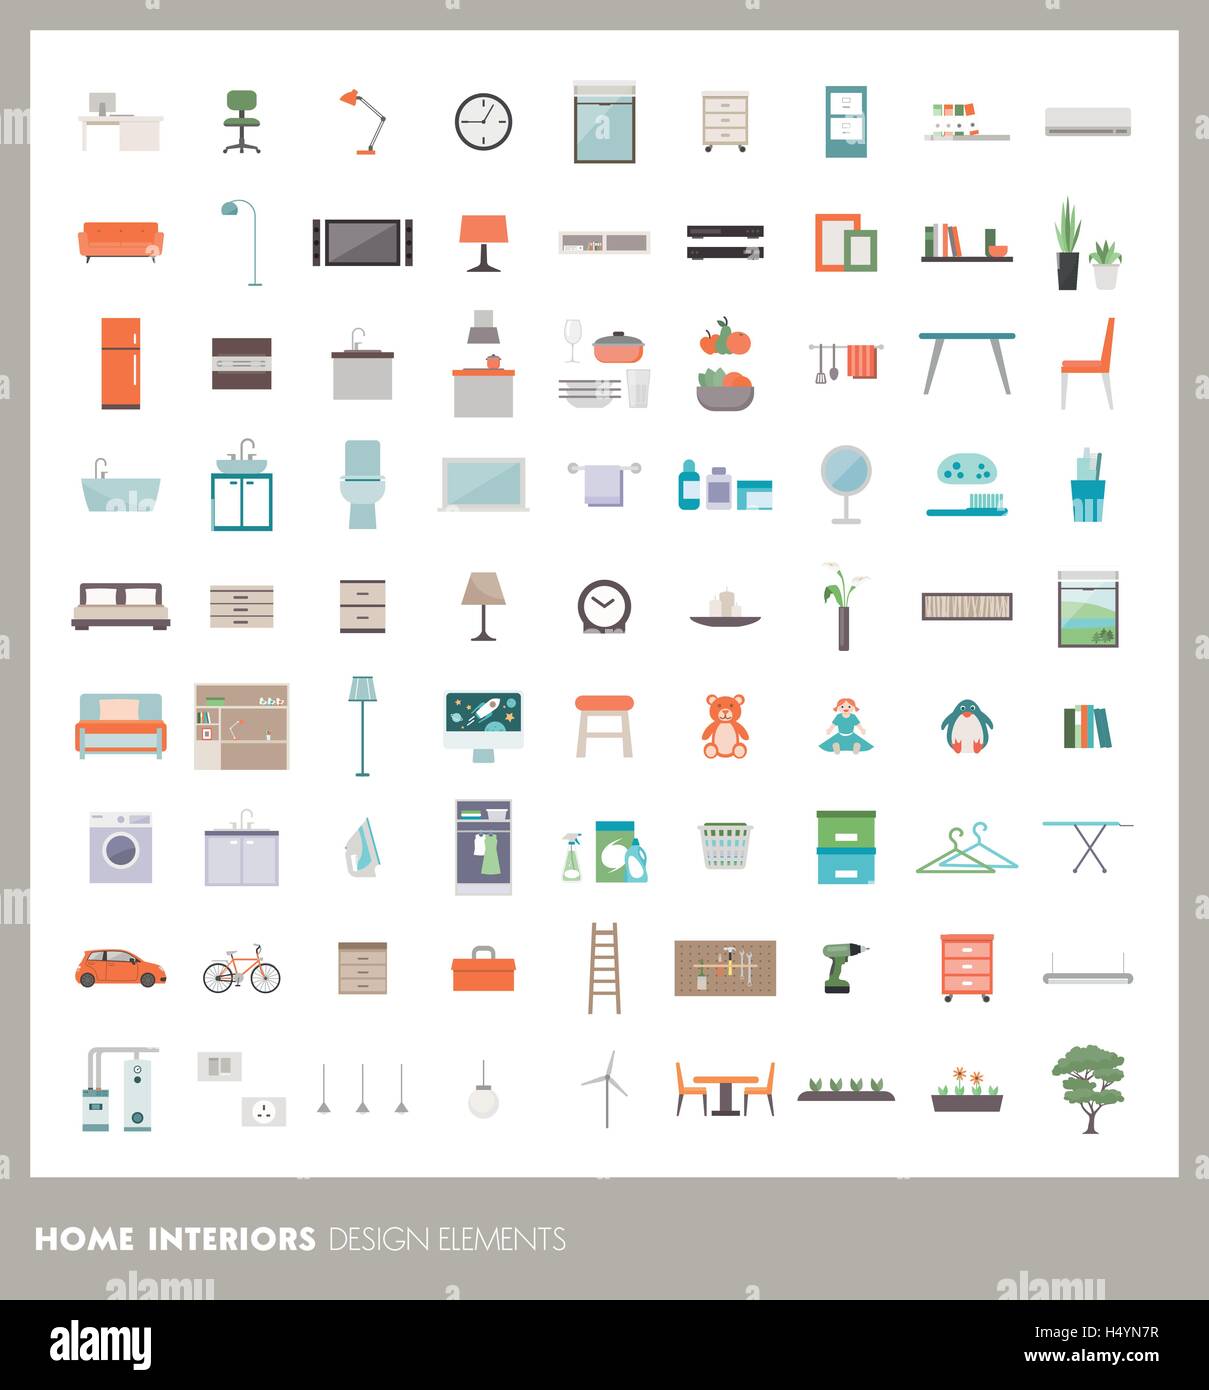 Accueil prix intérieurs (éléments et icons set : mobilier, objets et appareils Illustration de Vecteur